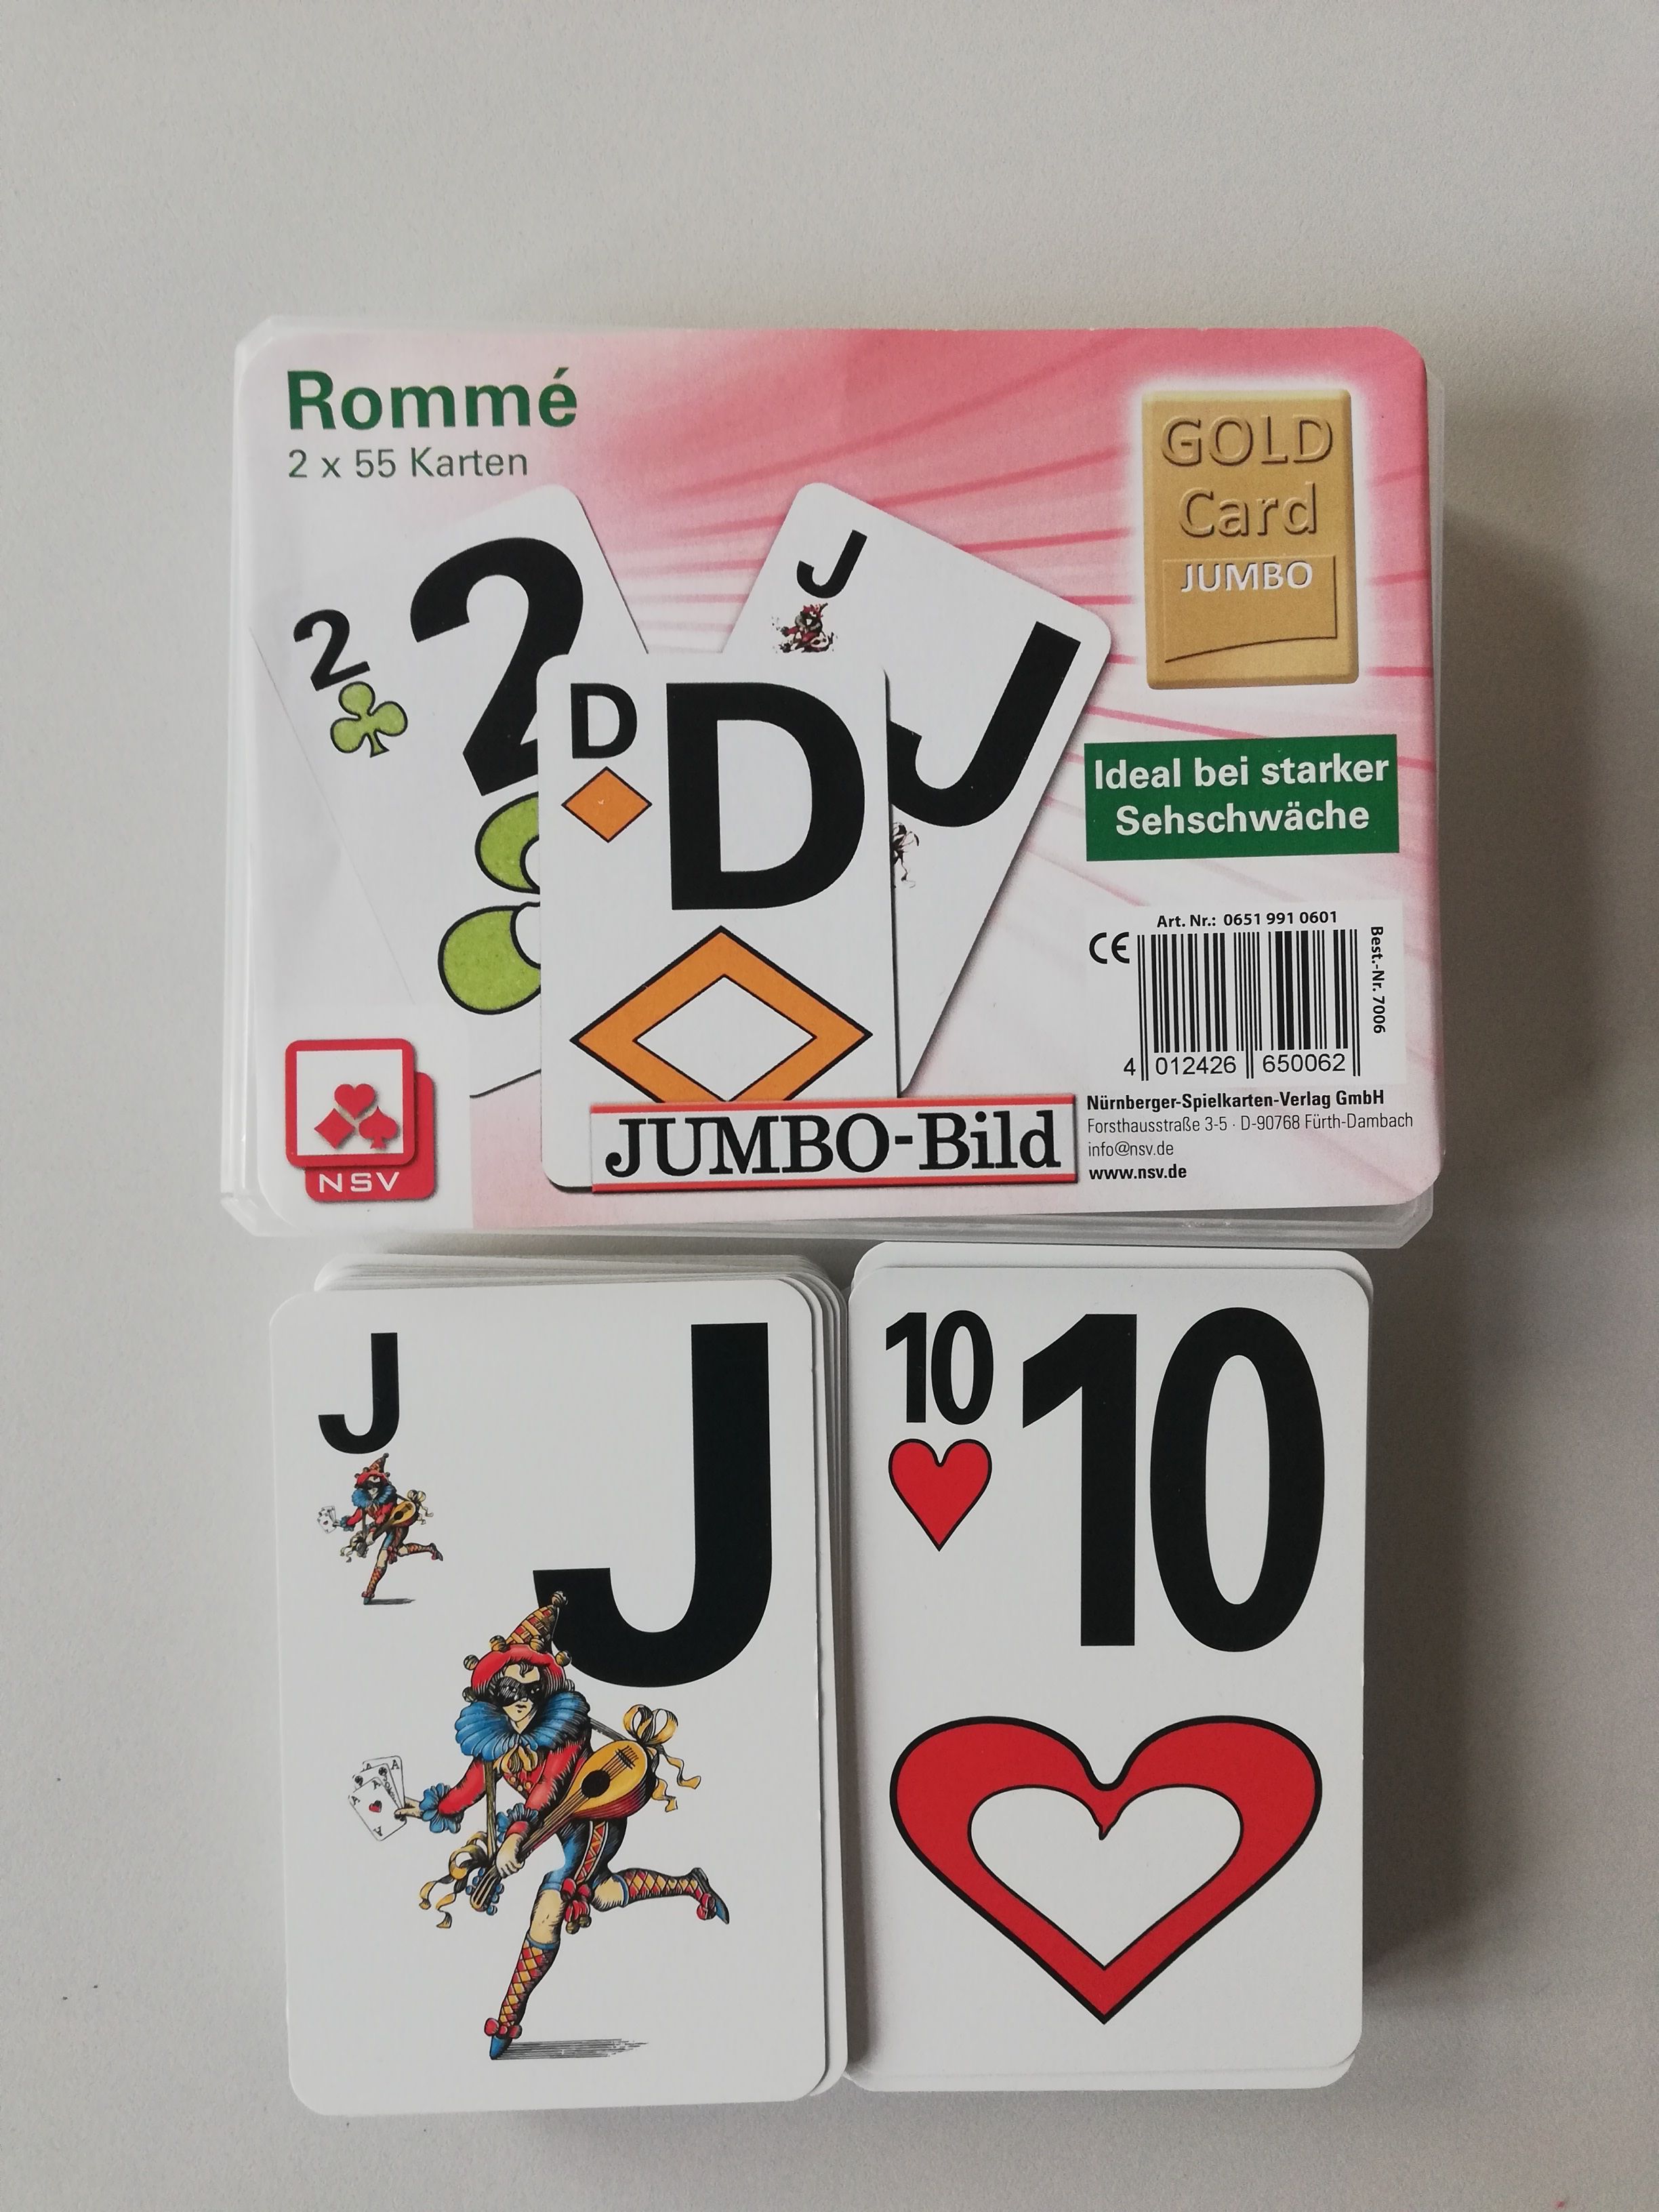 Rommèspiel - zu sehen ist eine Jokerkarte, eine Herz 10 und das Deckblatt des Spiels